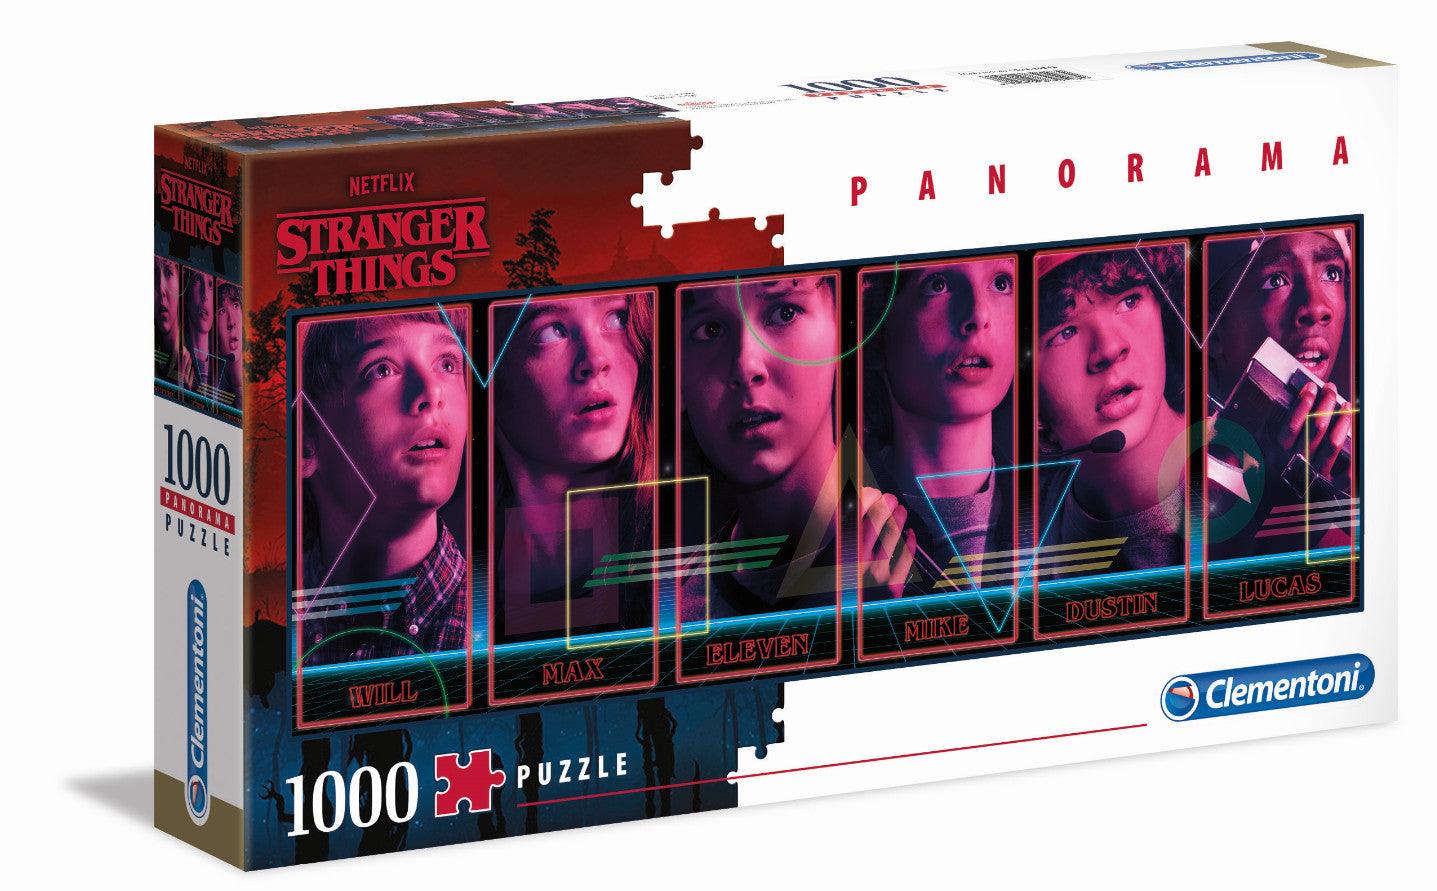 VR-85618 Clementoni Puzzle Netflix Stranger Things Panorama Puzzle 1,000 pieces - Clementoni - Titan Pop Culture